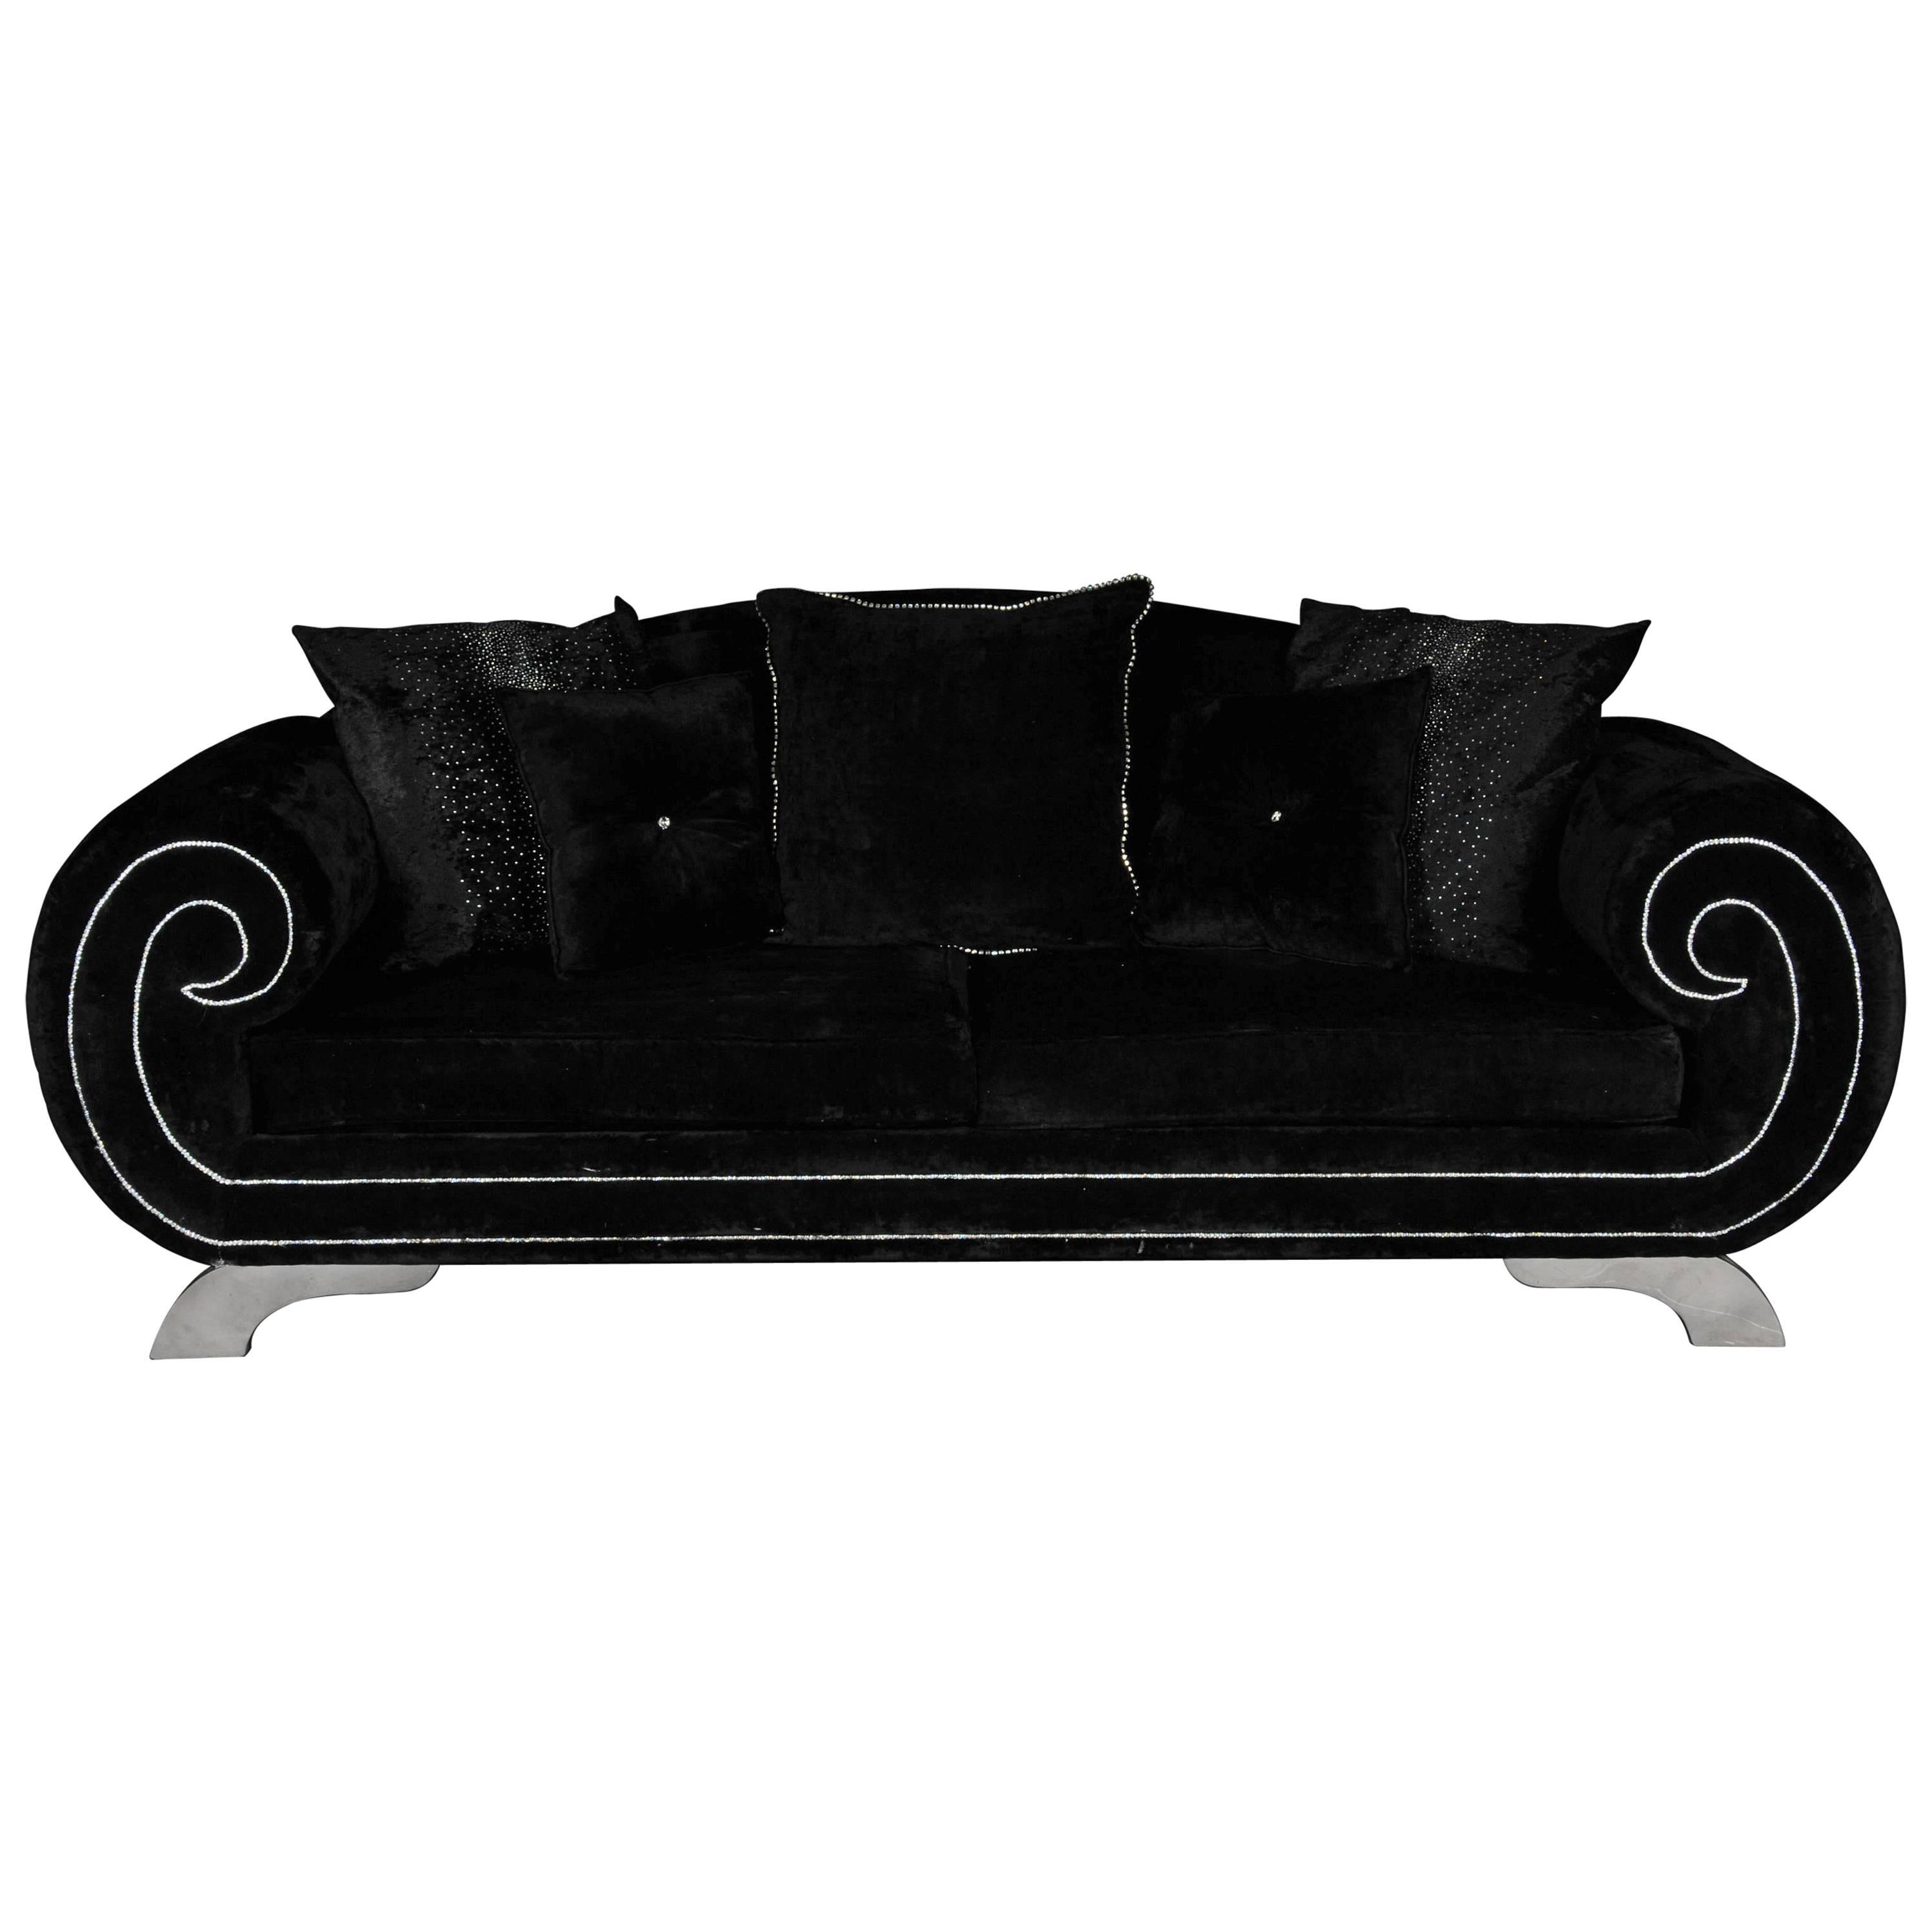 Unique Luxurious Designer Sofa or Couch, Rhinestones, Black Velvet Highlight For Sale